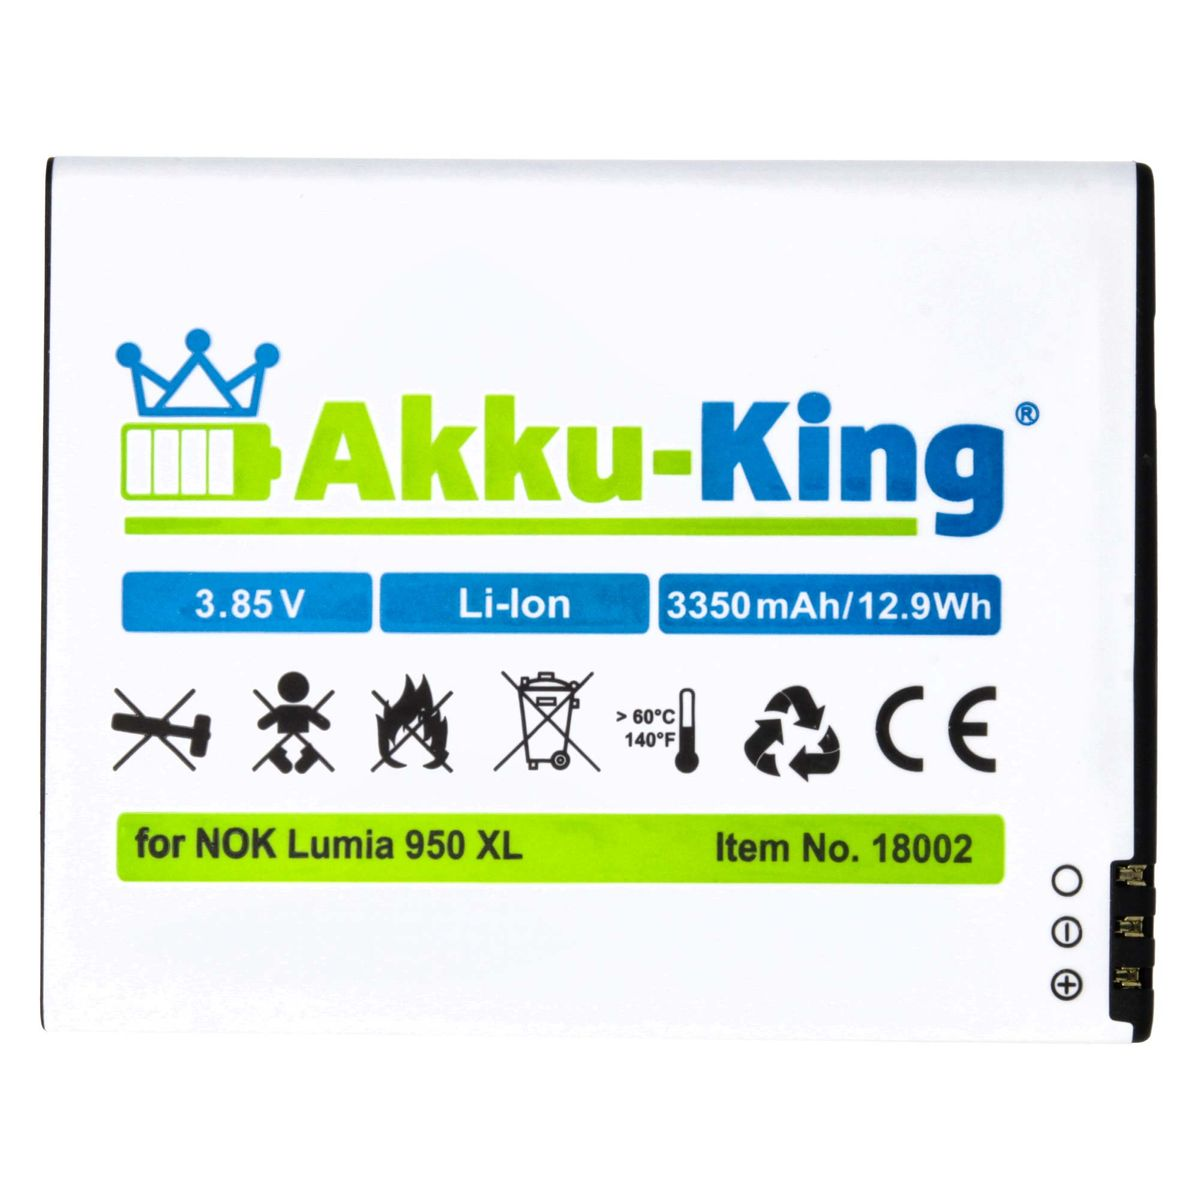 Nokia Volt, Li-Ion AKKU-KING kompatibel Akku 3350mAh BV-T4D mit Handy-Akku, 3.85